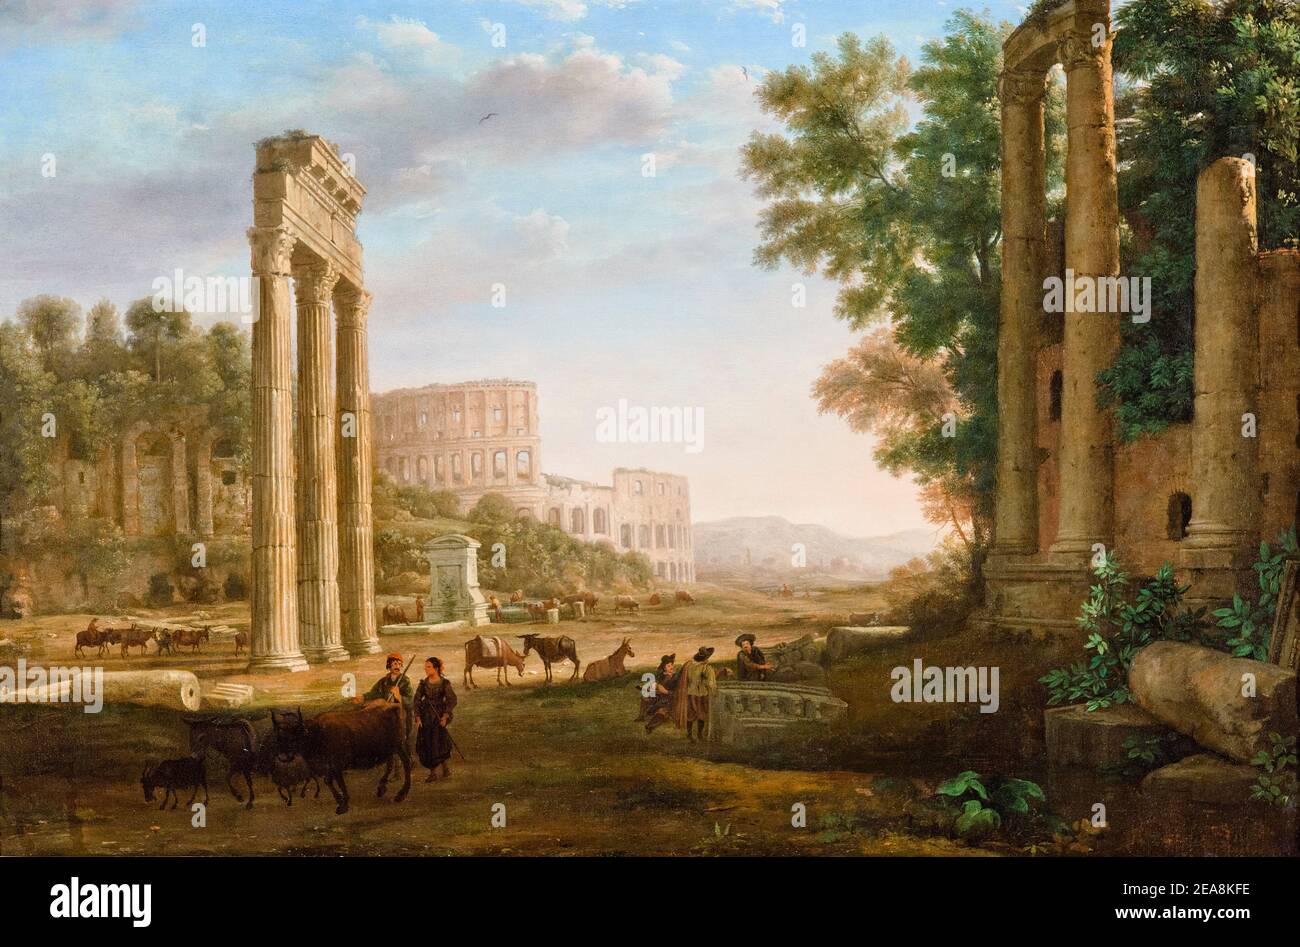 Capriccio mit Ruinen des Forum Romanum, Landschaftsmalerei von Claude Lorrain, um 1634 Stockfoto